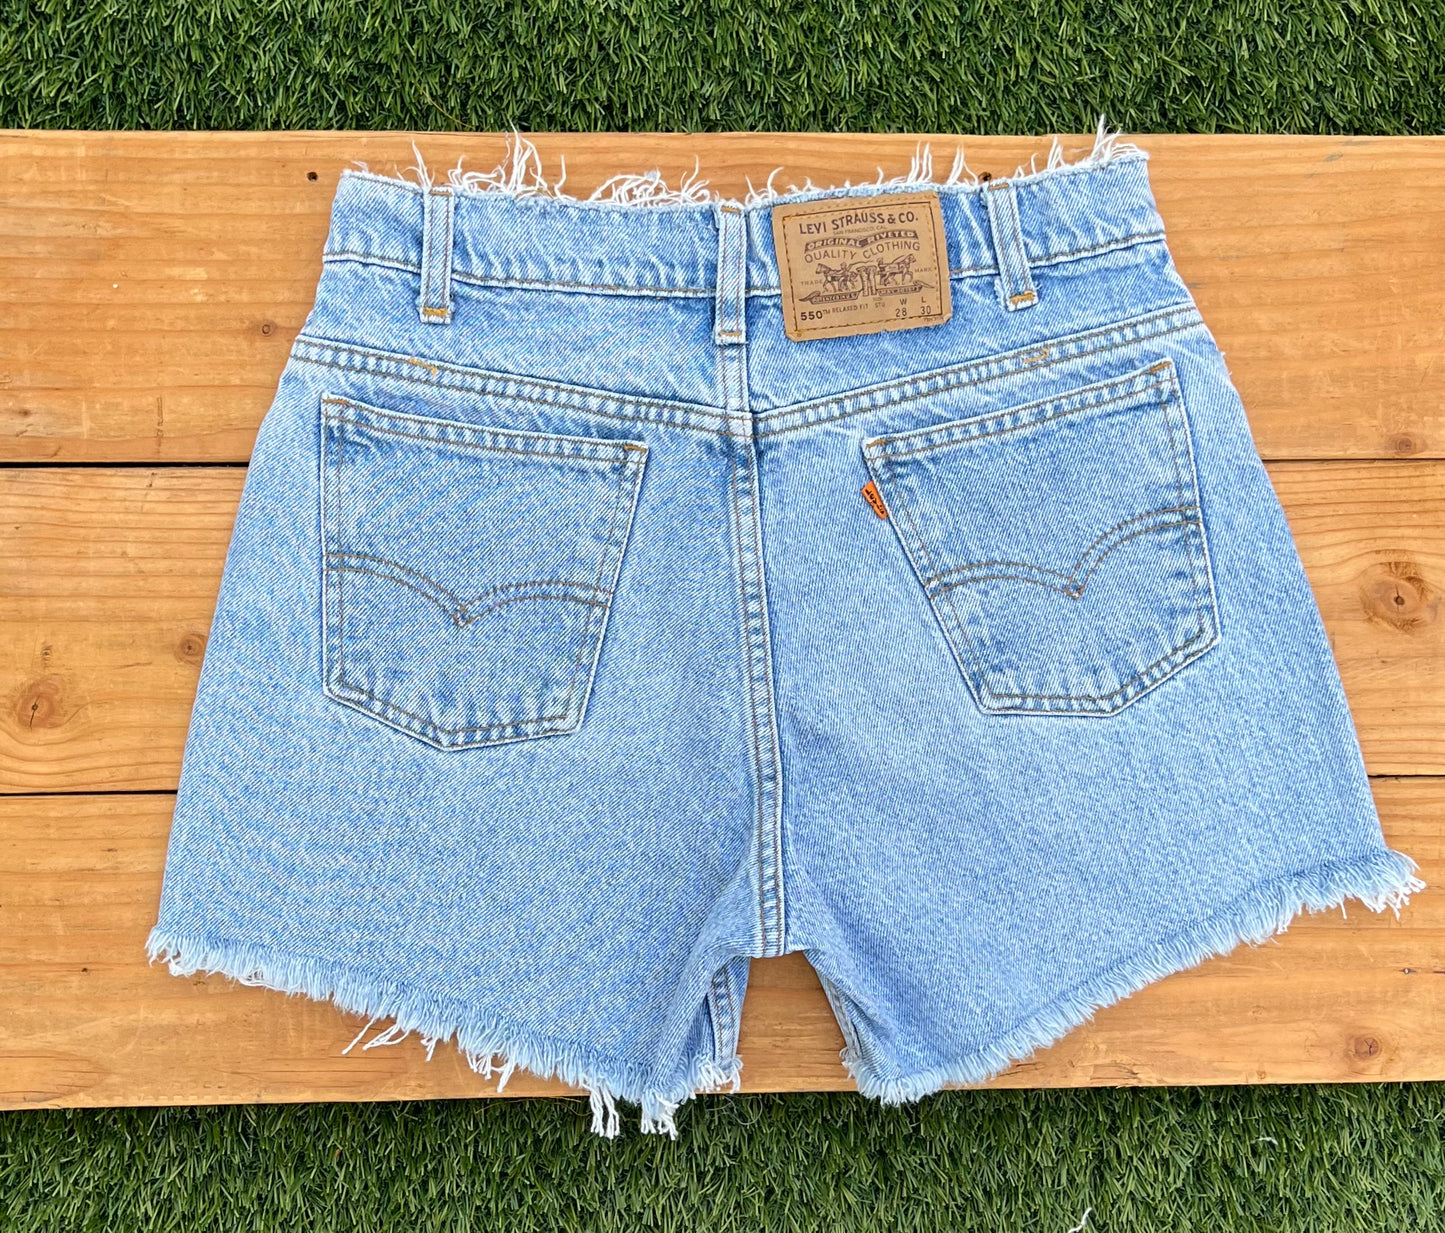 W28 Vintage Levi's Plain Shorts